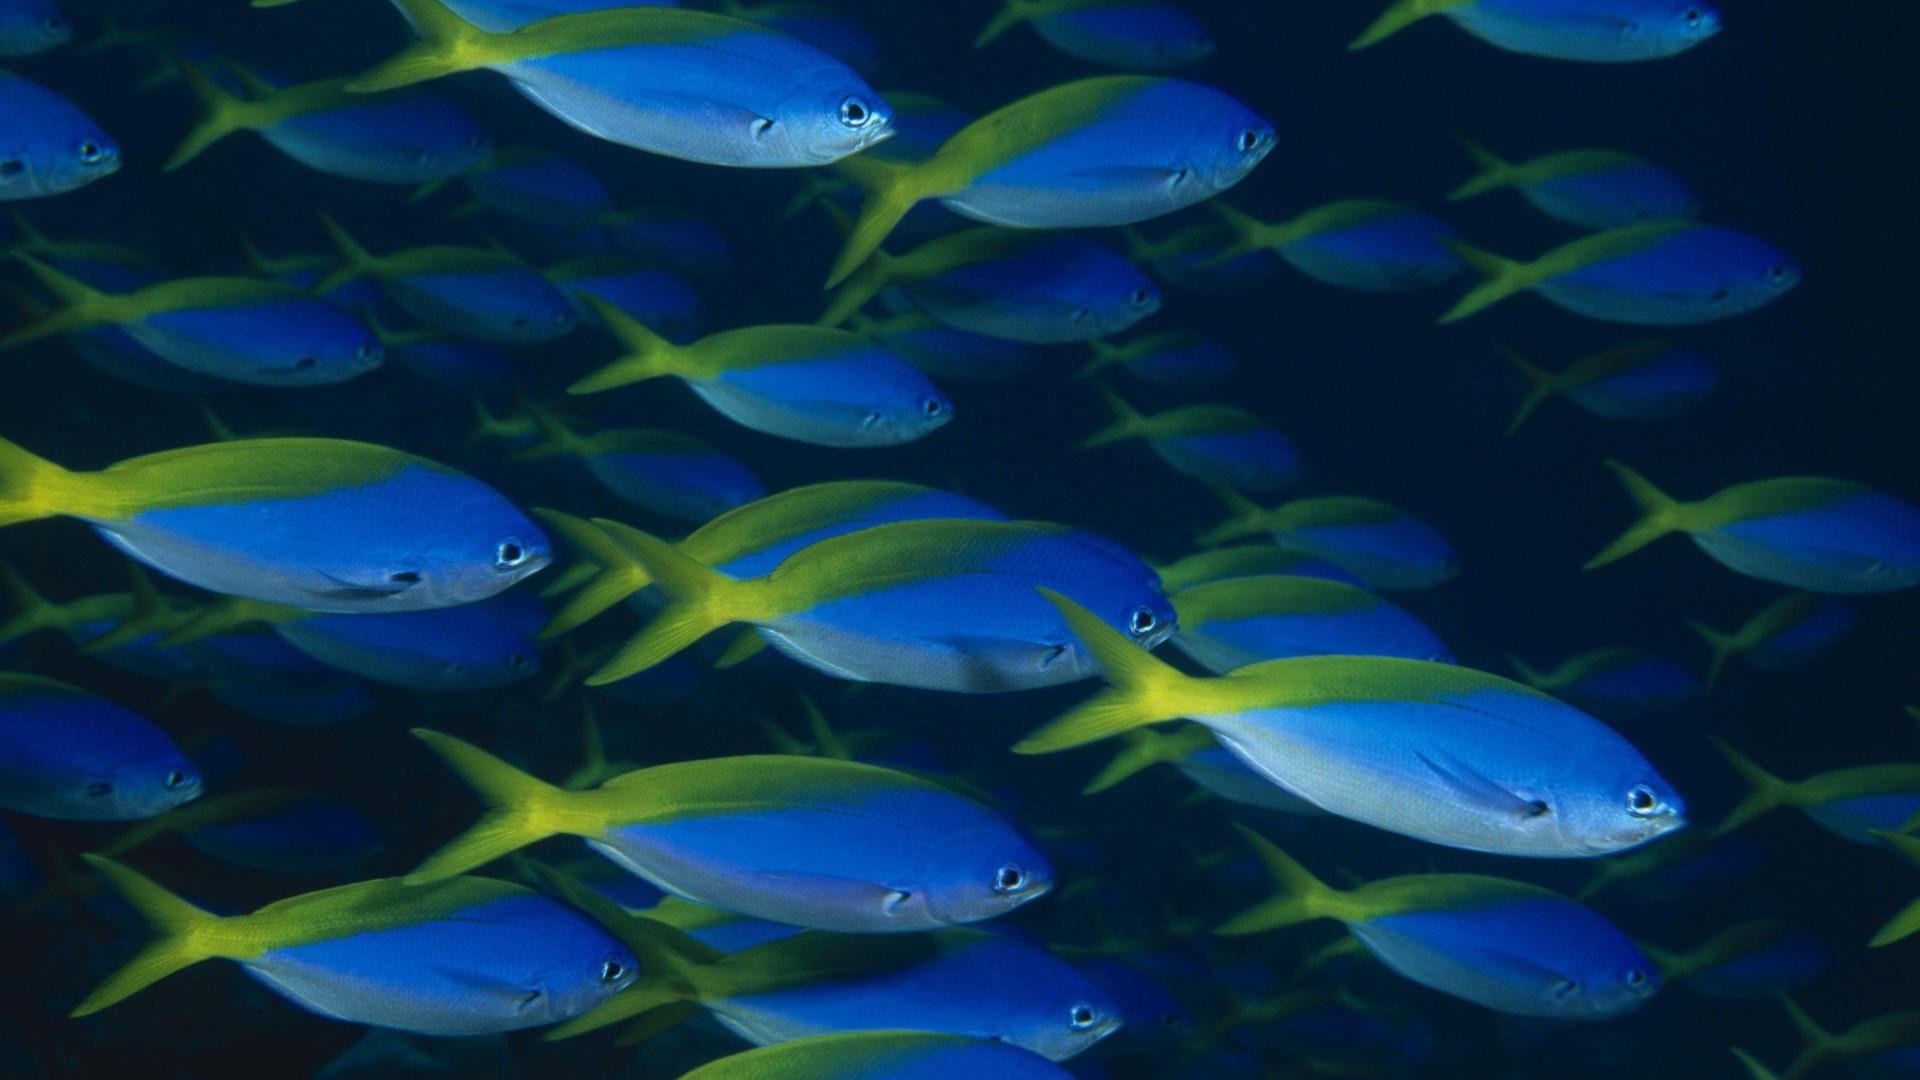 Blue Fish Image